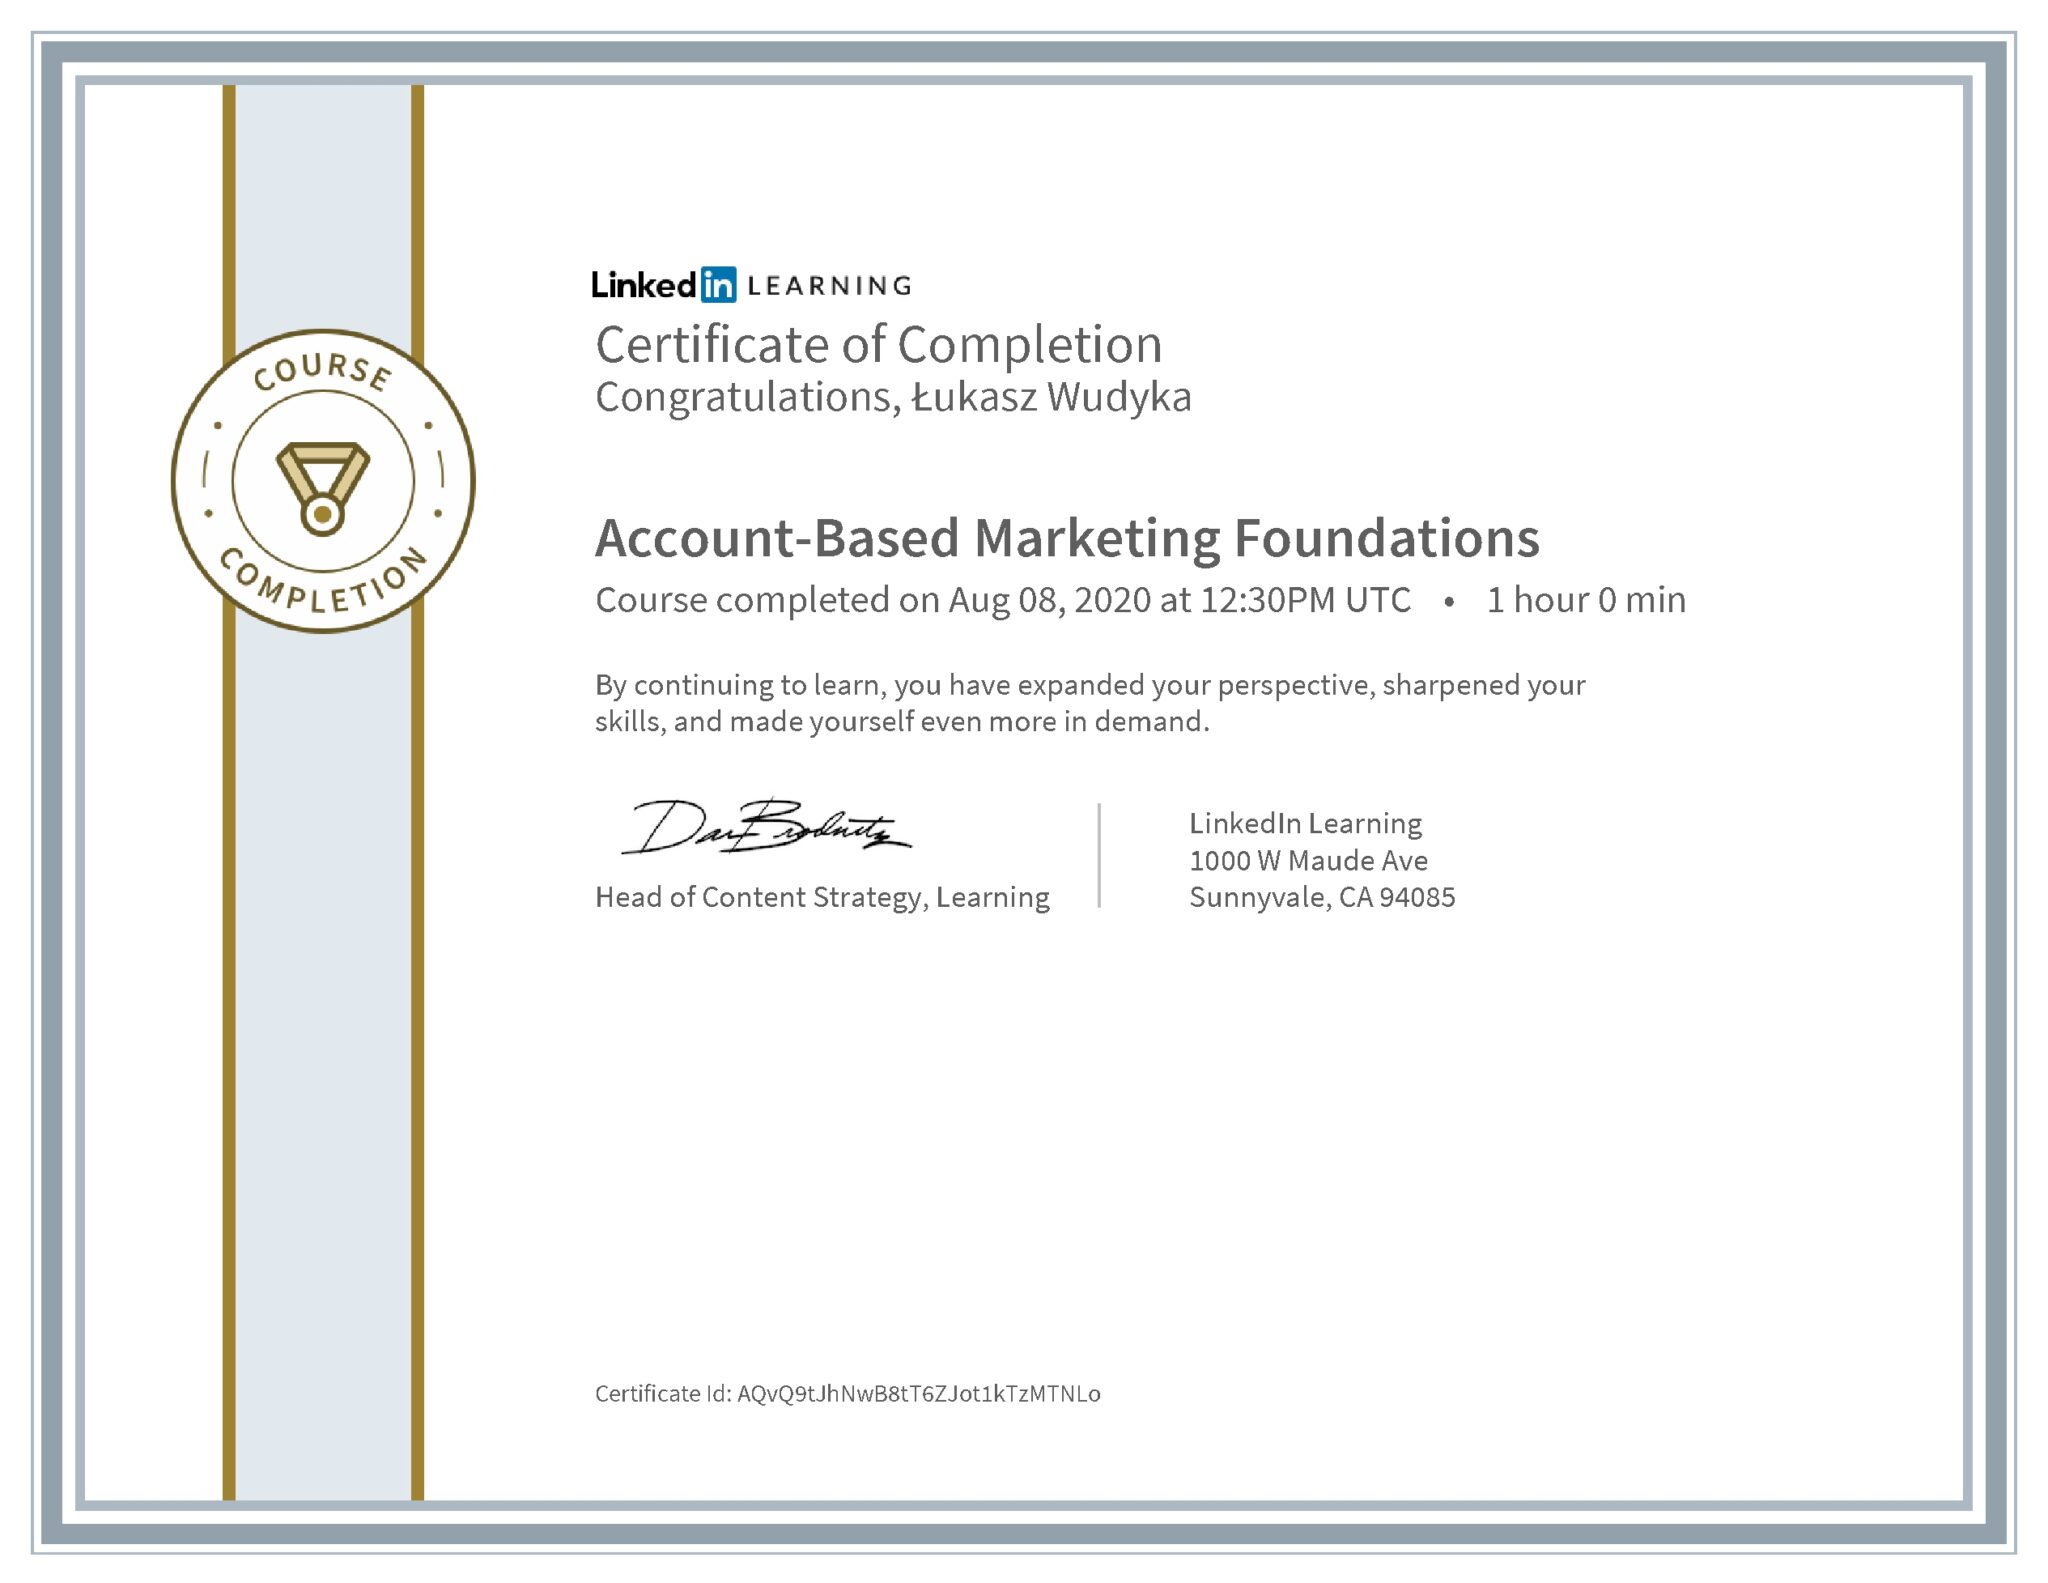 Łukasz Wudyka certyfikat LinkedIn Account-Based Marketing Foundations